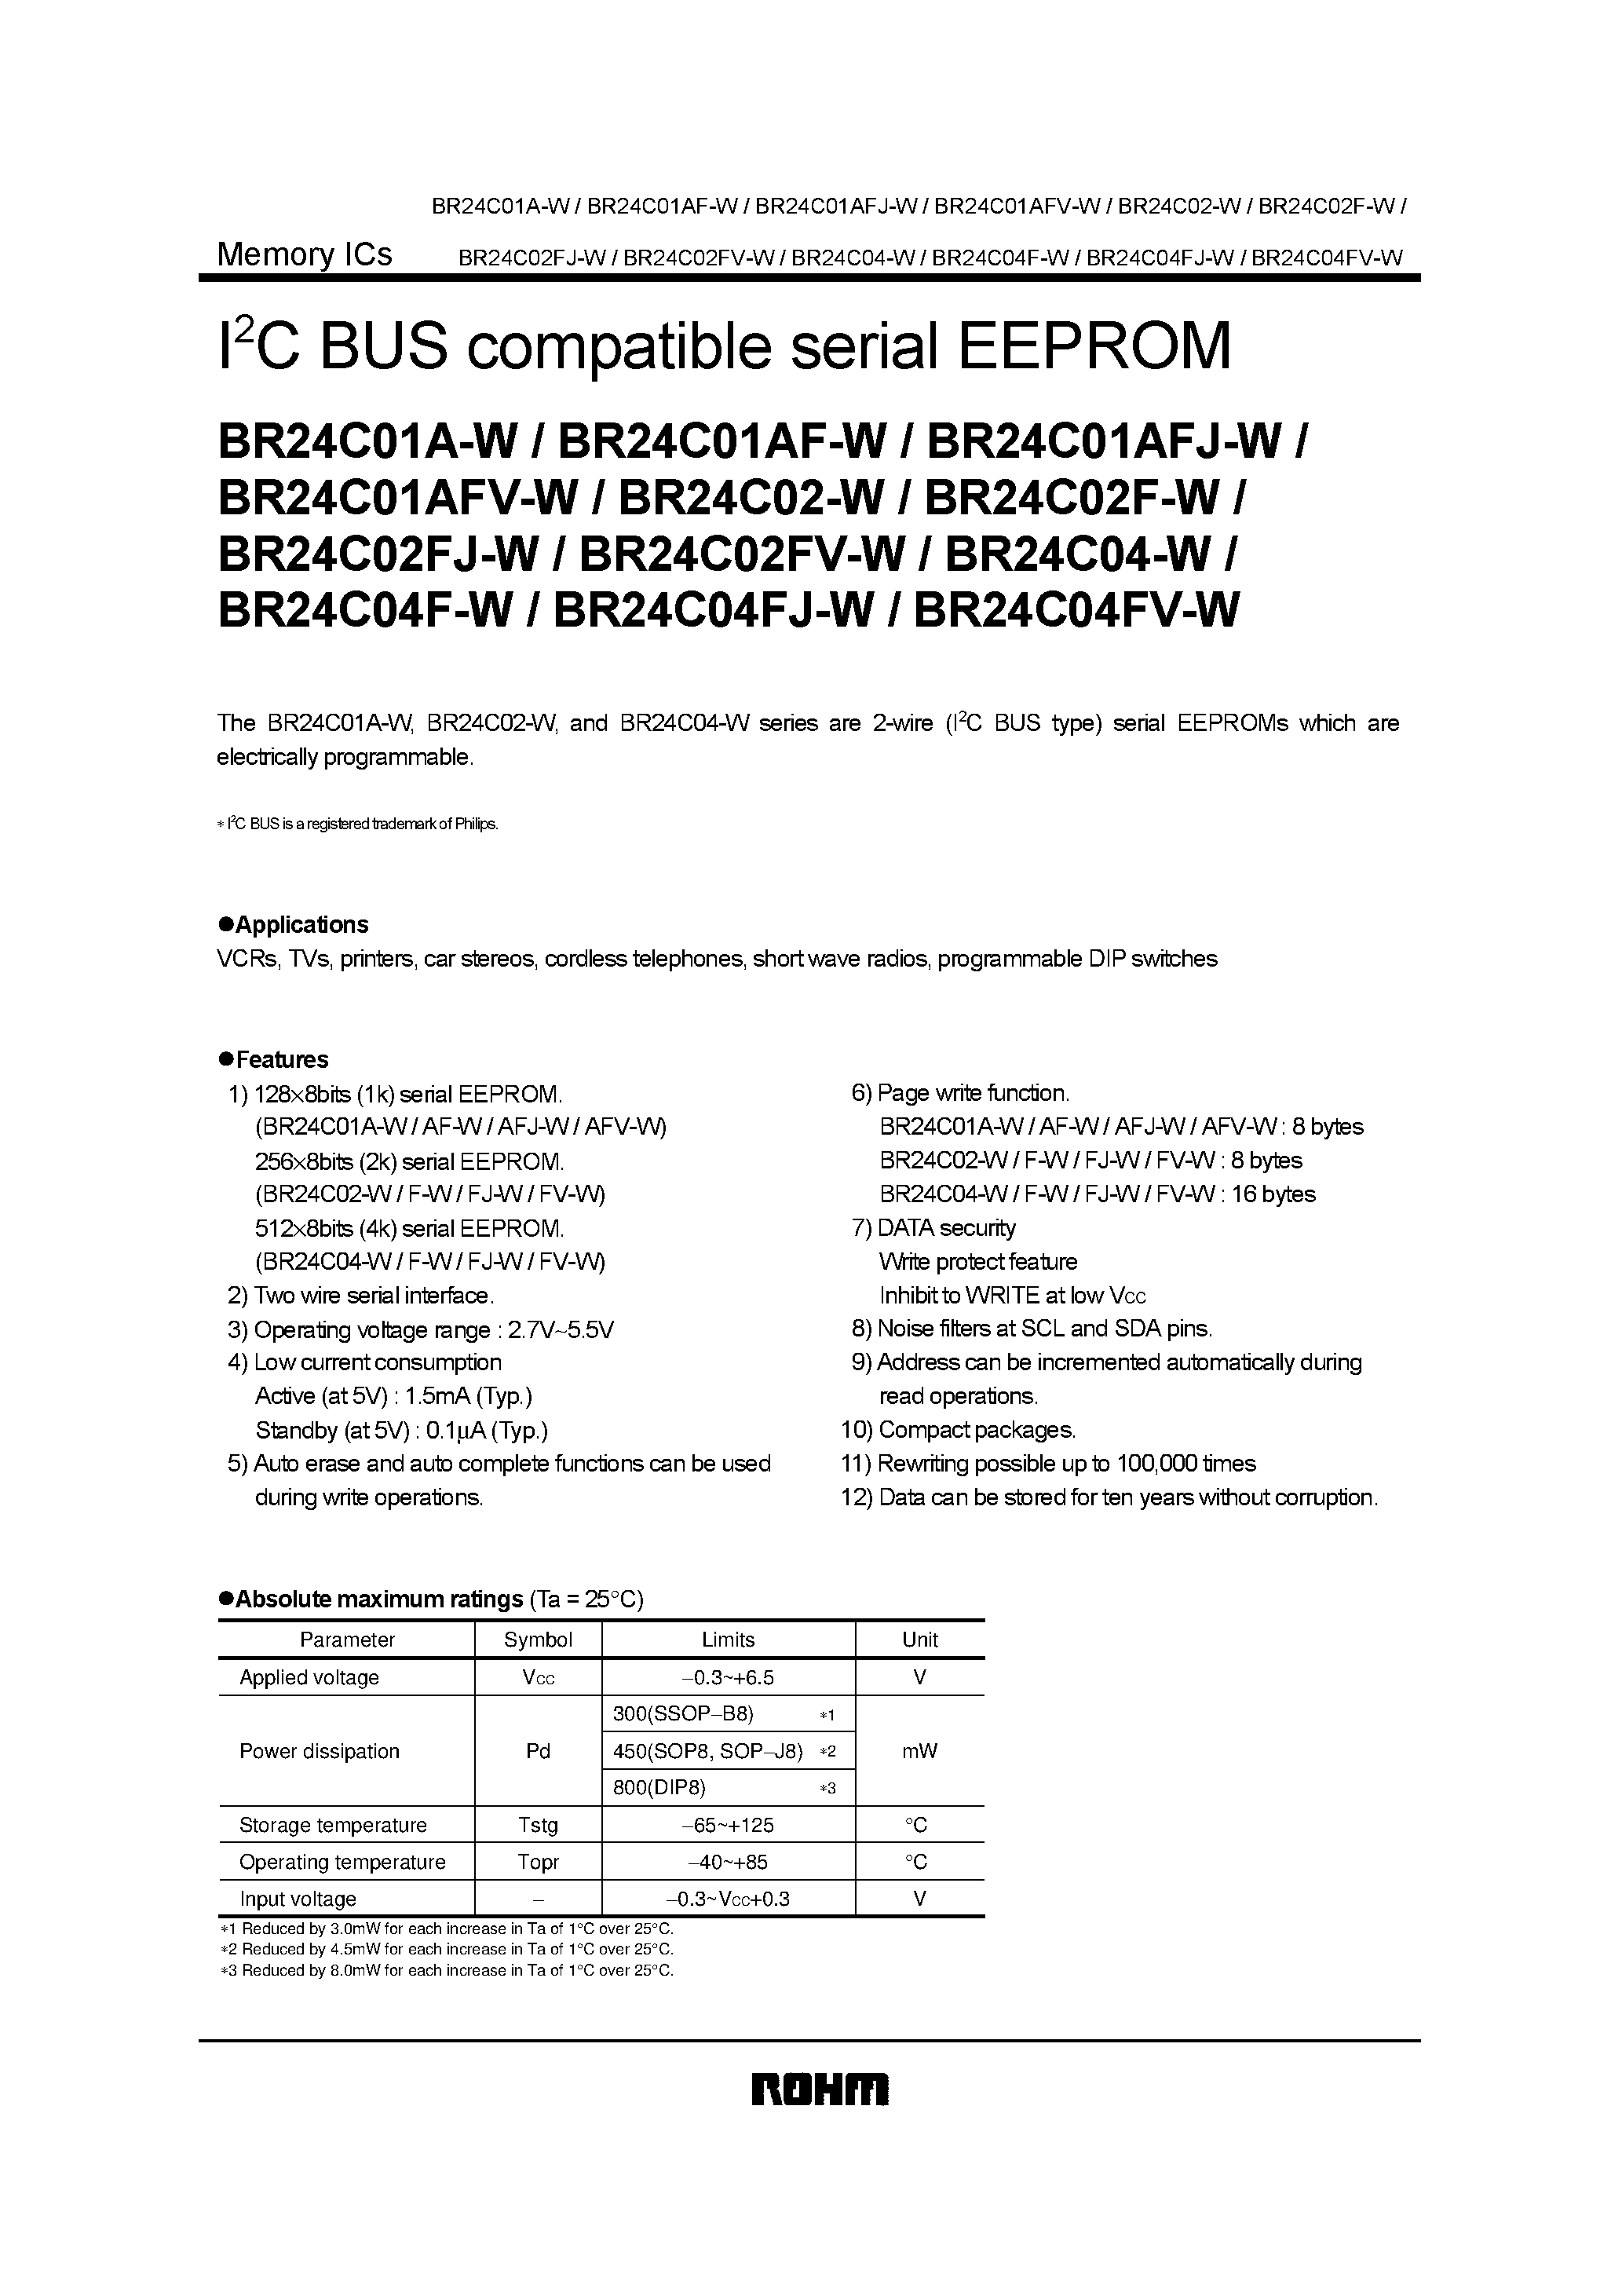 Даташит BR24C04FJ-W - I2C BUS compatible serial EEPROM страница 1